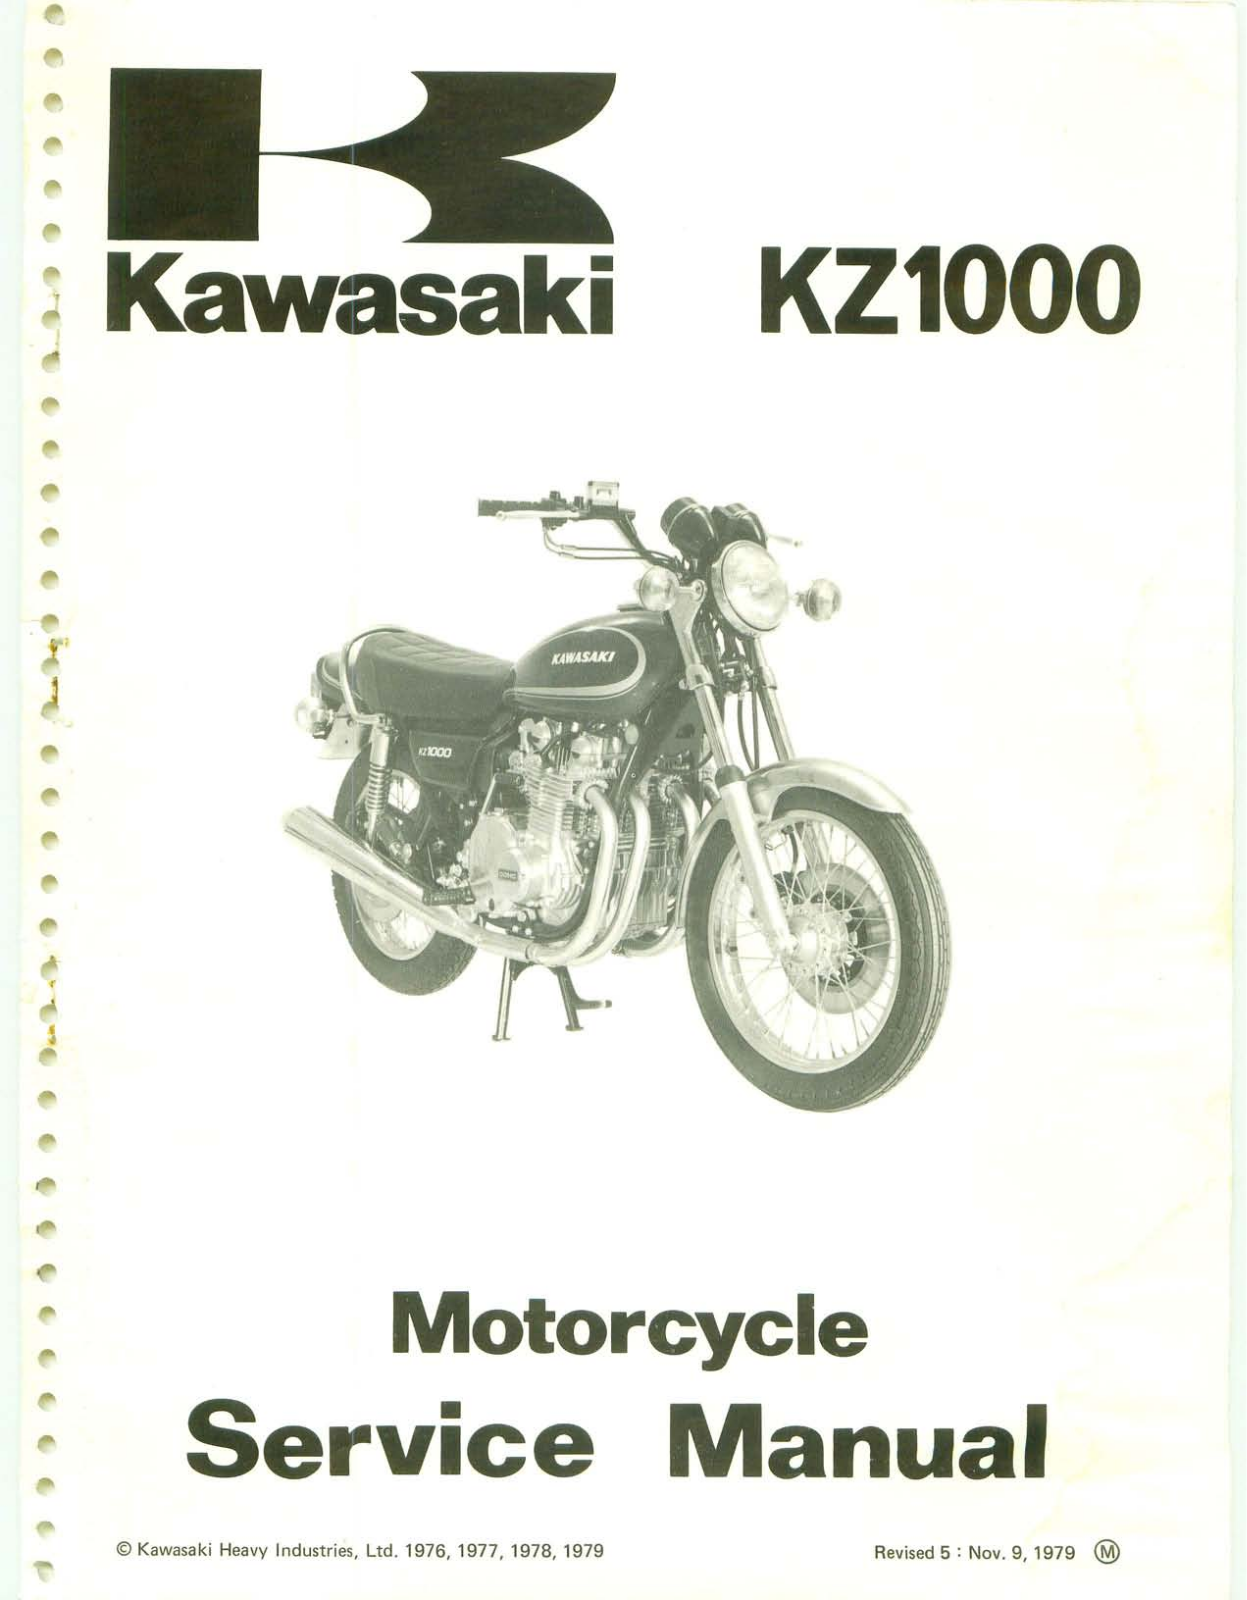 kawasaki KZ1000 Service Manual